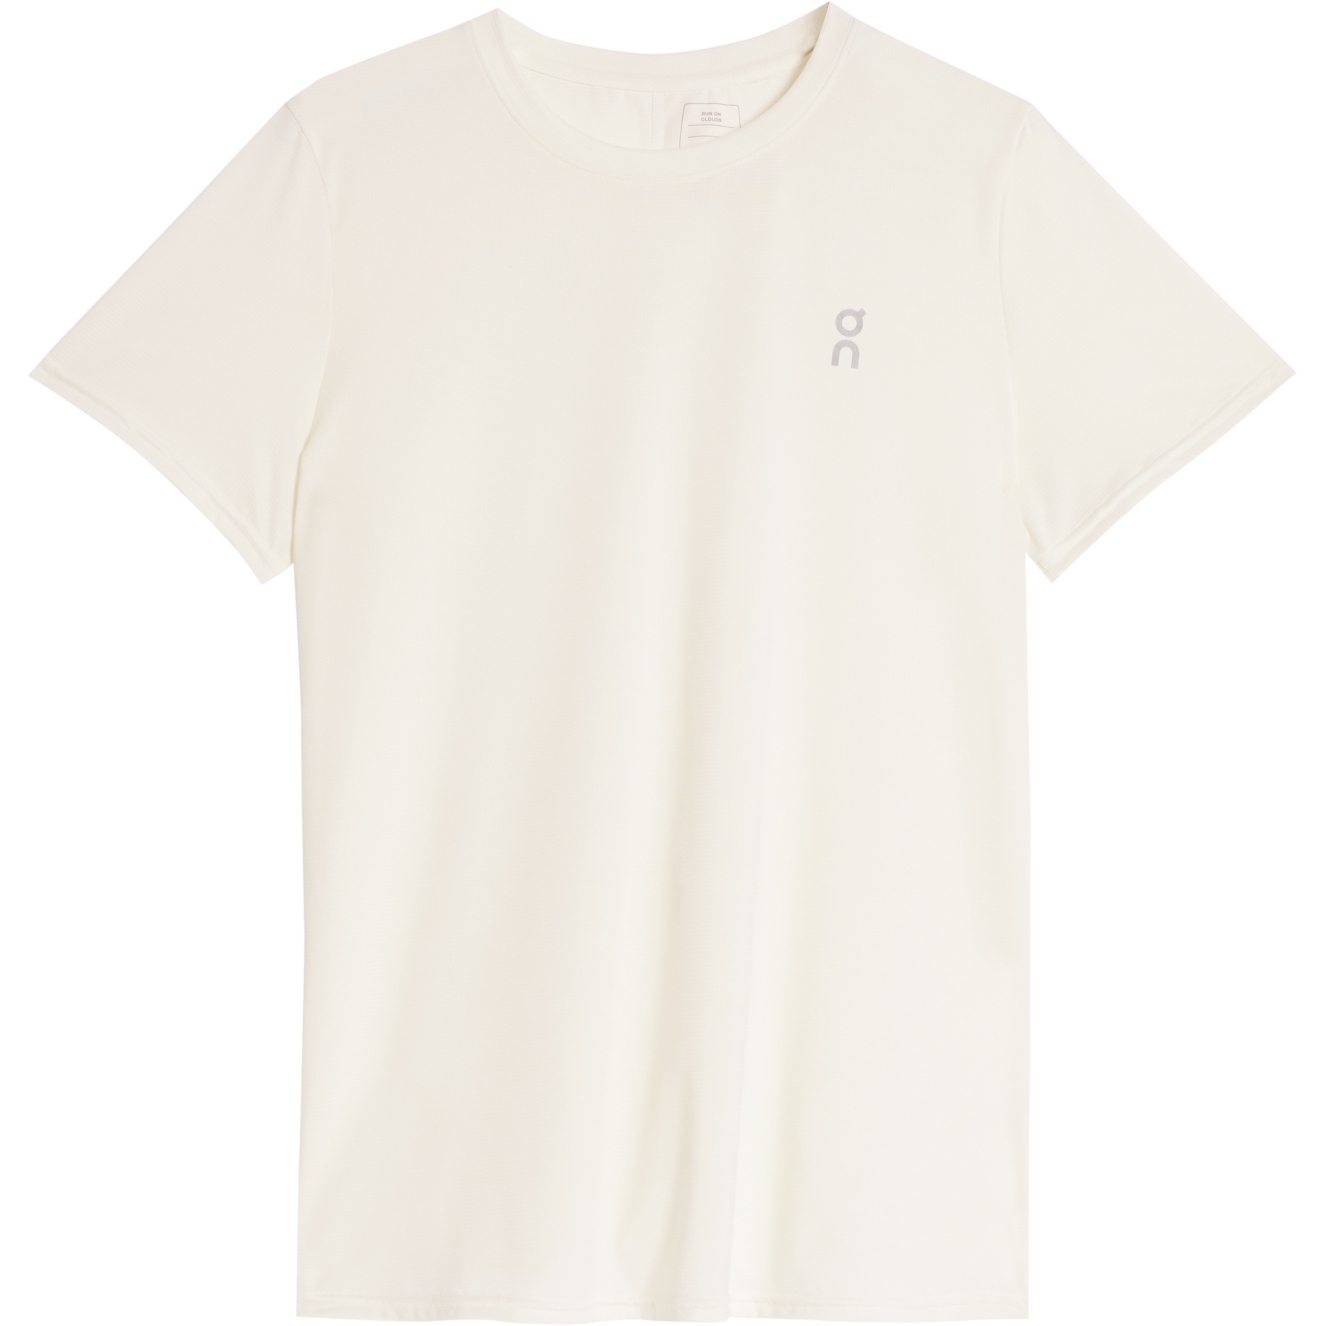 Produktbild von On Core-T Damen Laufshirt - Undyed-White